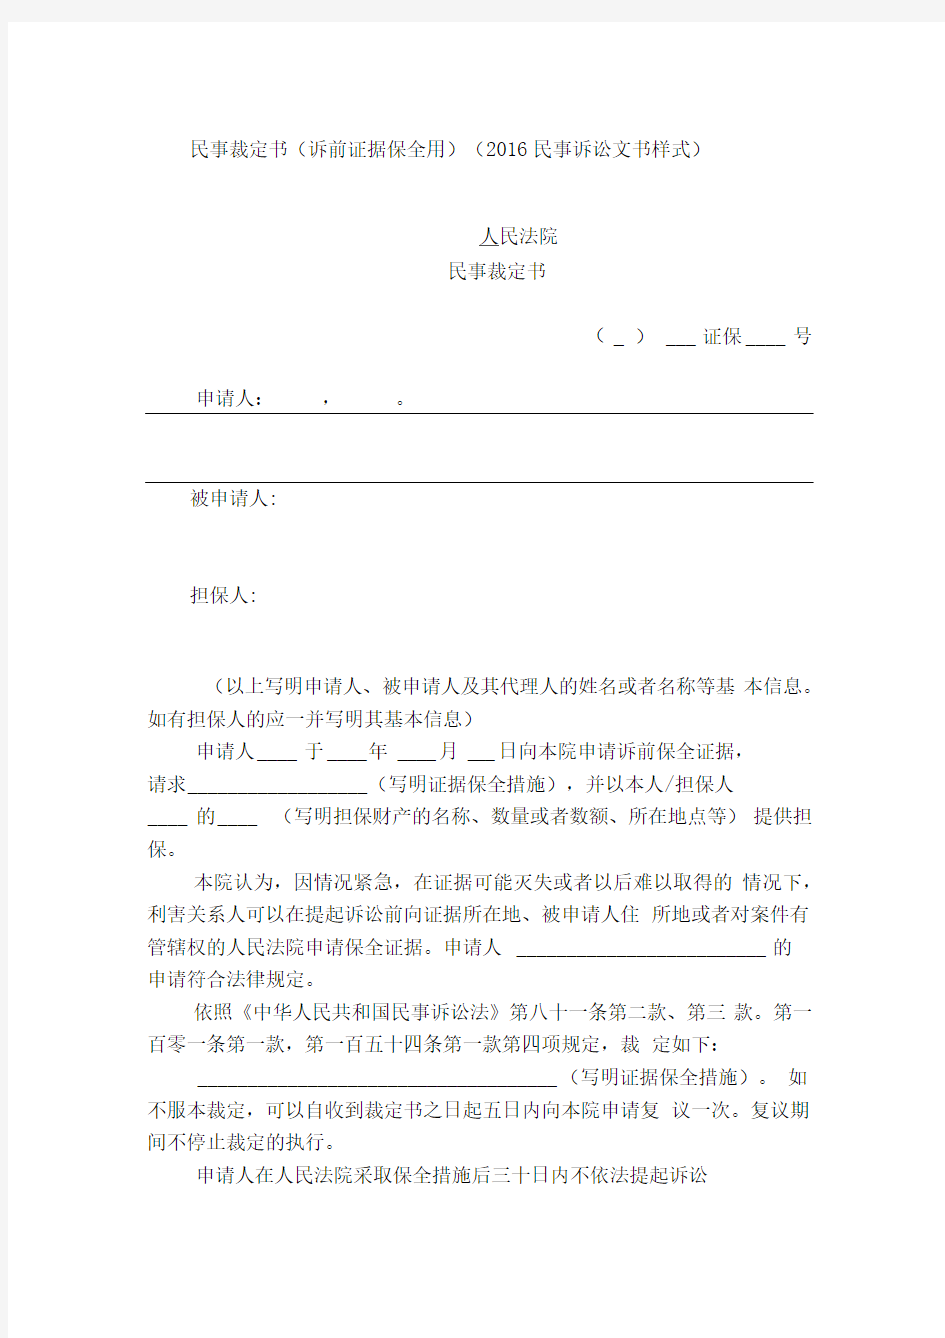 民事裁定书(诉前证据保全用)(2016民事诉讼文书样式)